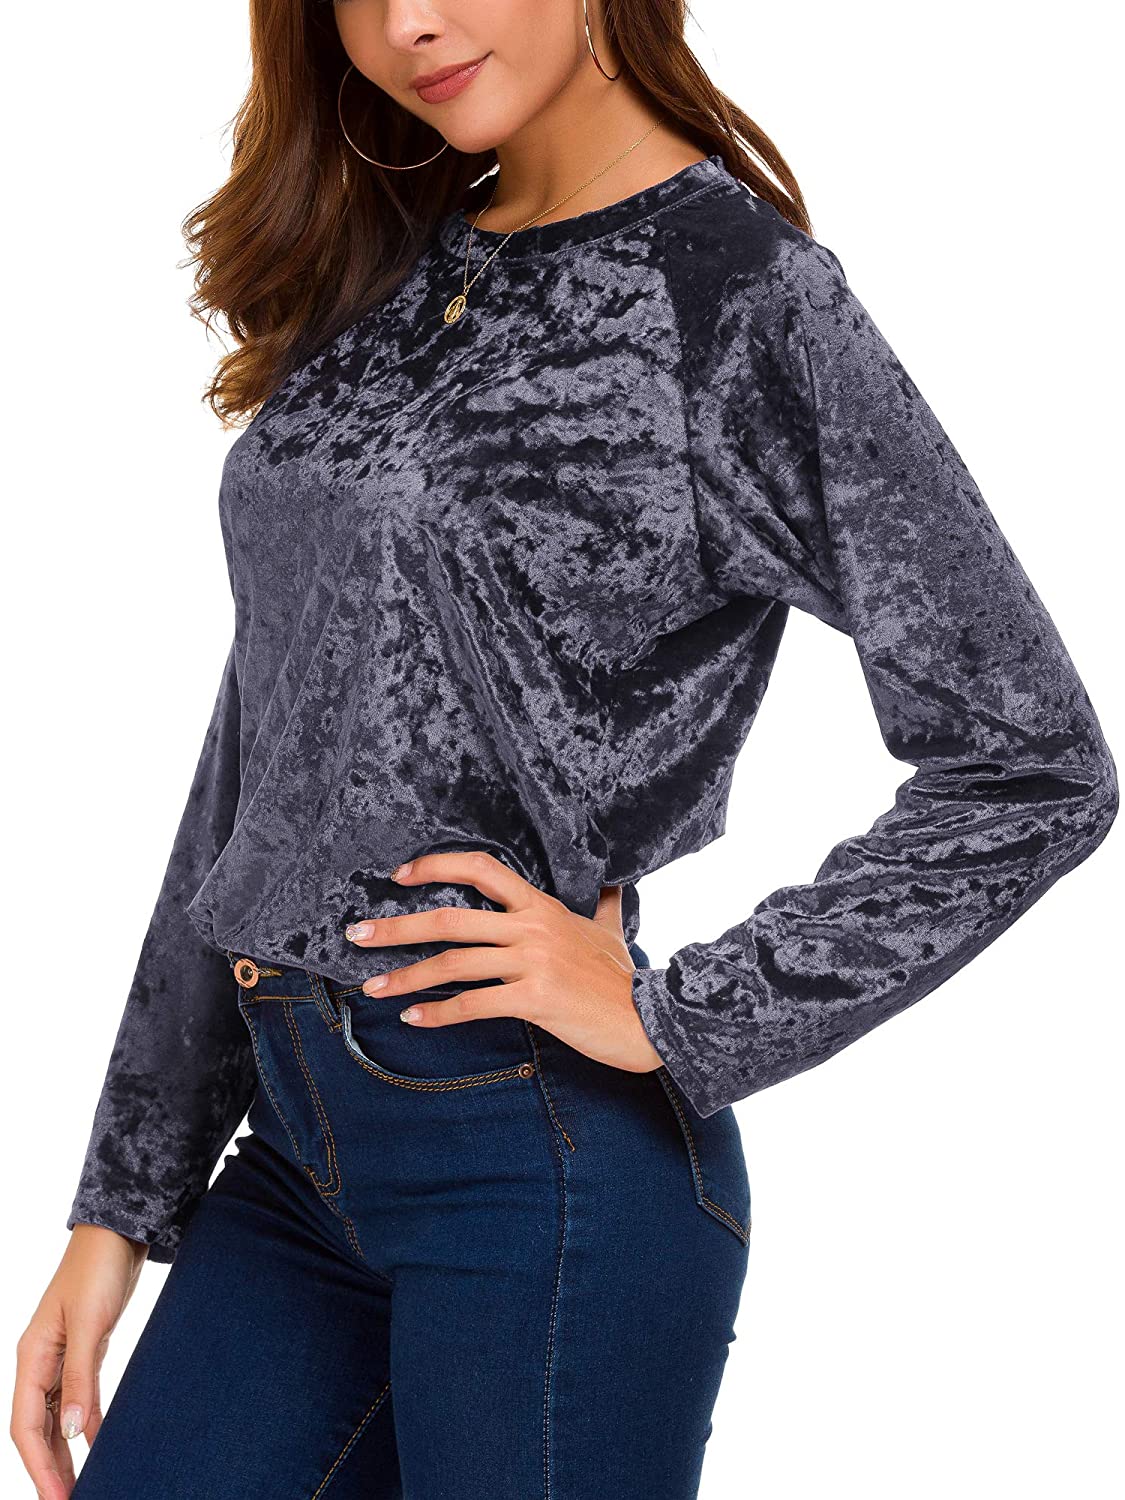 Women's Vintage Velvet T-Shirt Casual Long Sleeve Top | eBay